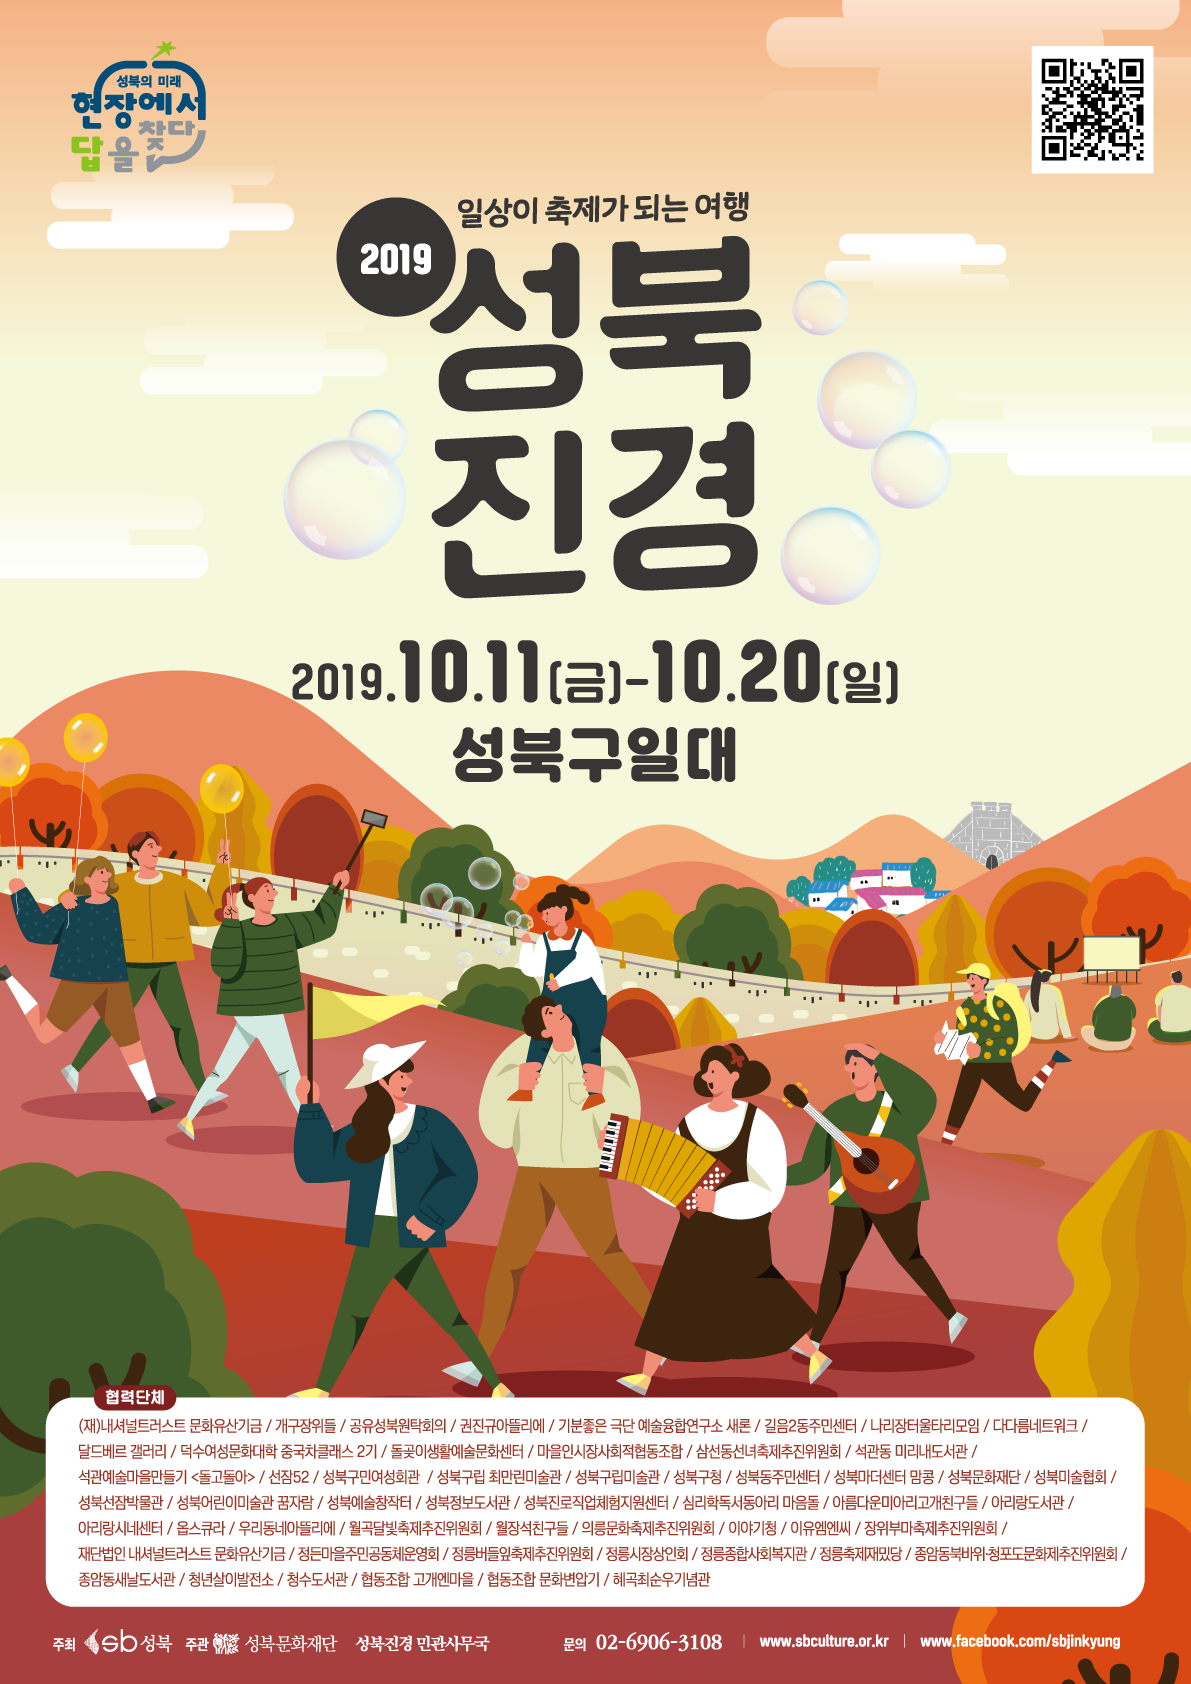 일상이 축제가 되는 여행 2019 성북진경 2019.10.11(금) - 10.20(일) 성북구 일대